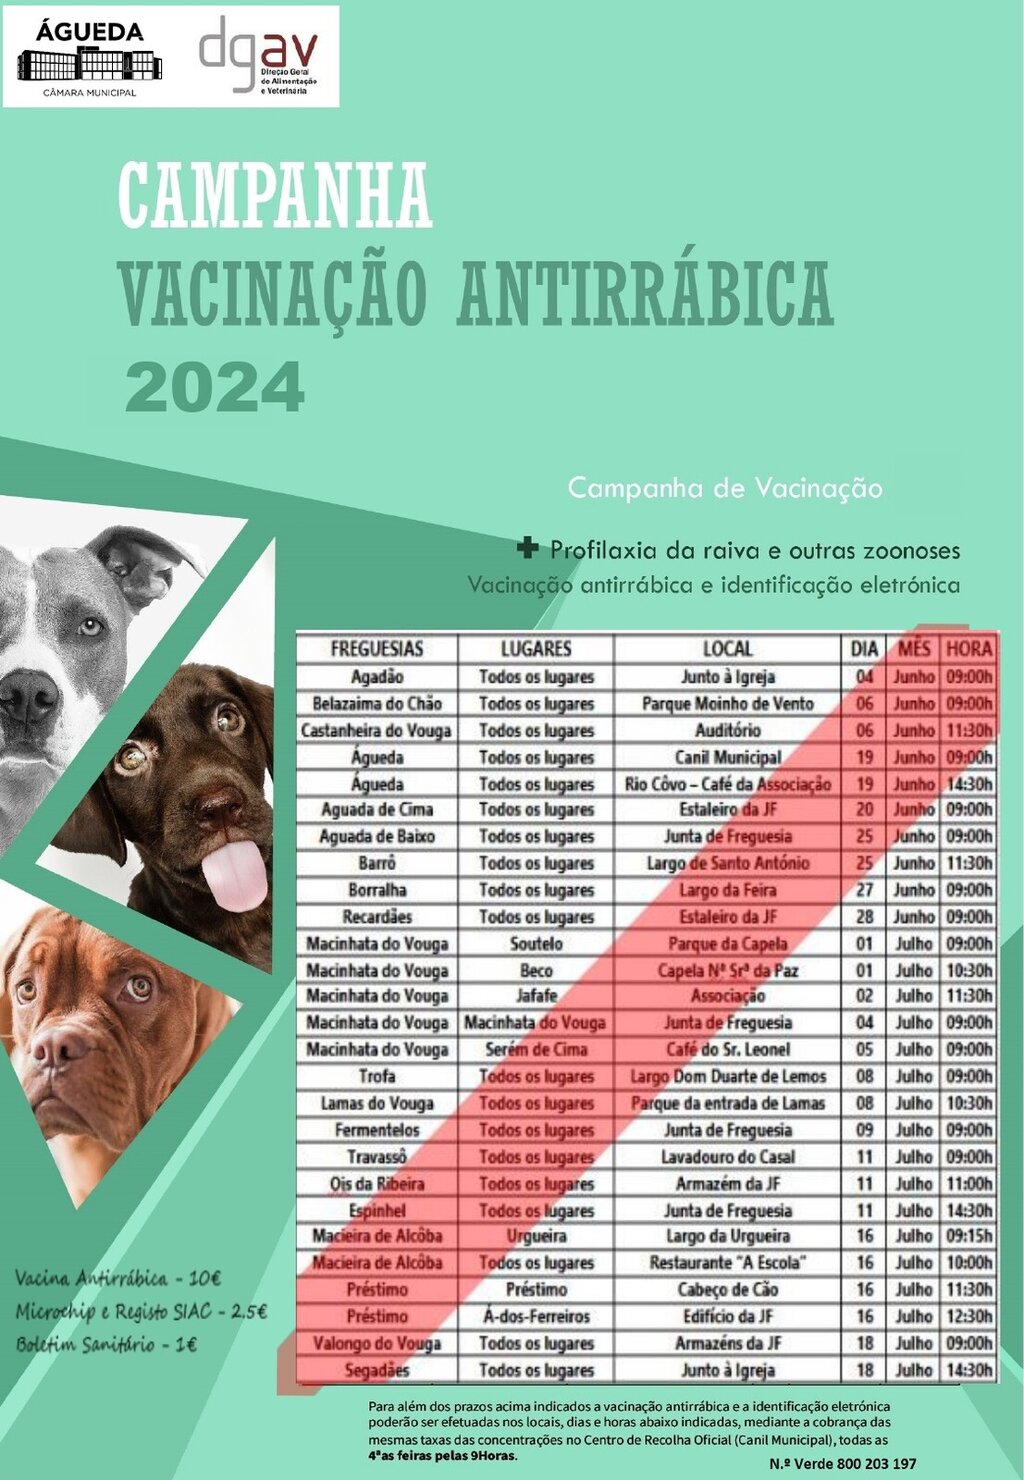 Campanha anual de vacinação antirrábica decorre de 4 de junho a 18 de julho